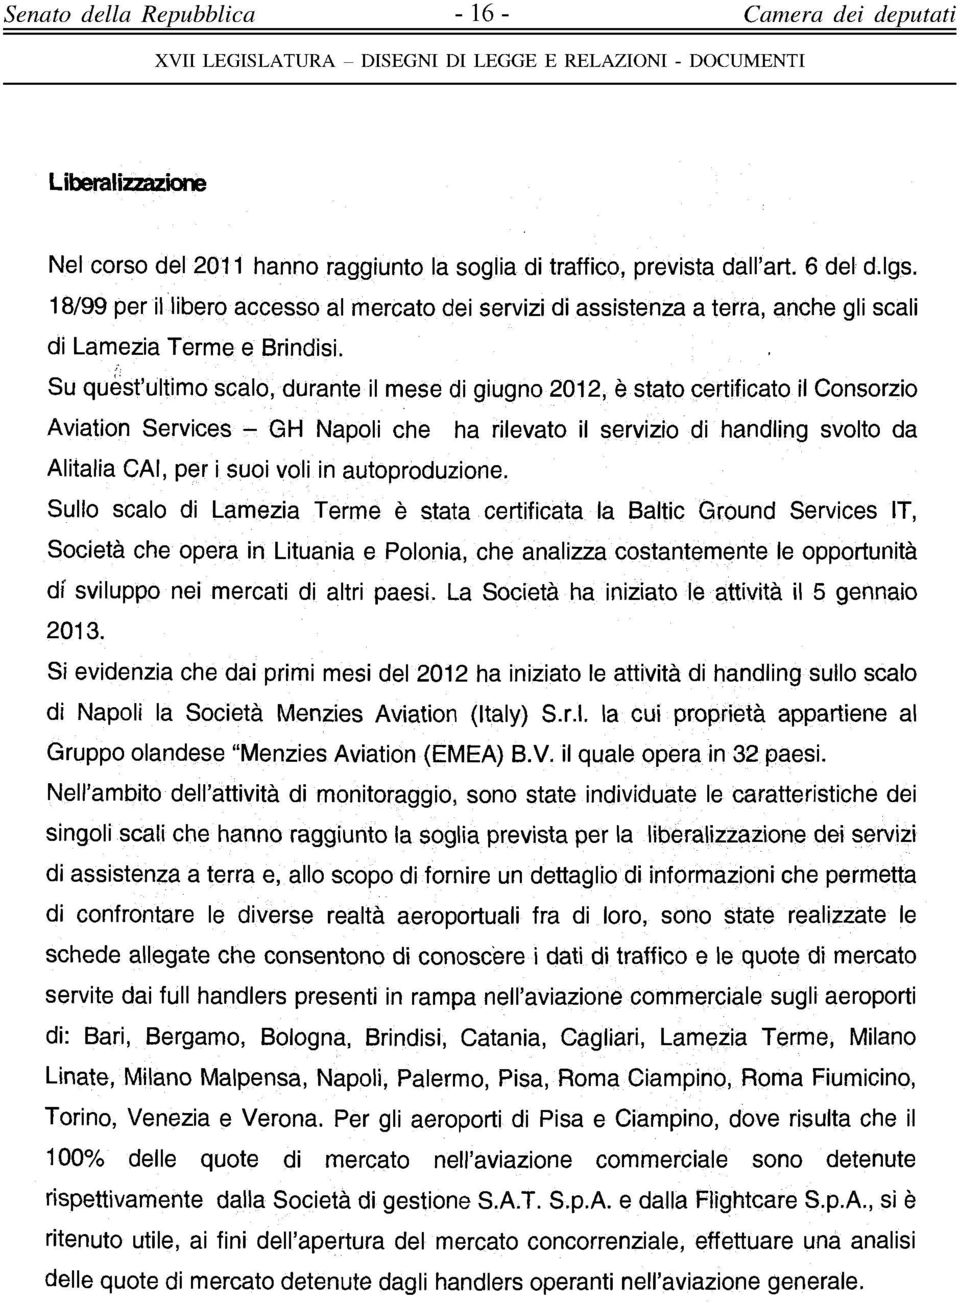 Su quest'ultimo scalo, durante il mese di giugno 2012, è stato certificato il Consorzio Aviation Services - GH Napoli che ha rilevato il servizio di handling svolto da Alitalia CAI, per i suoi voli